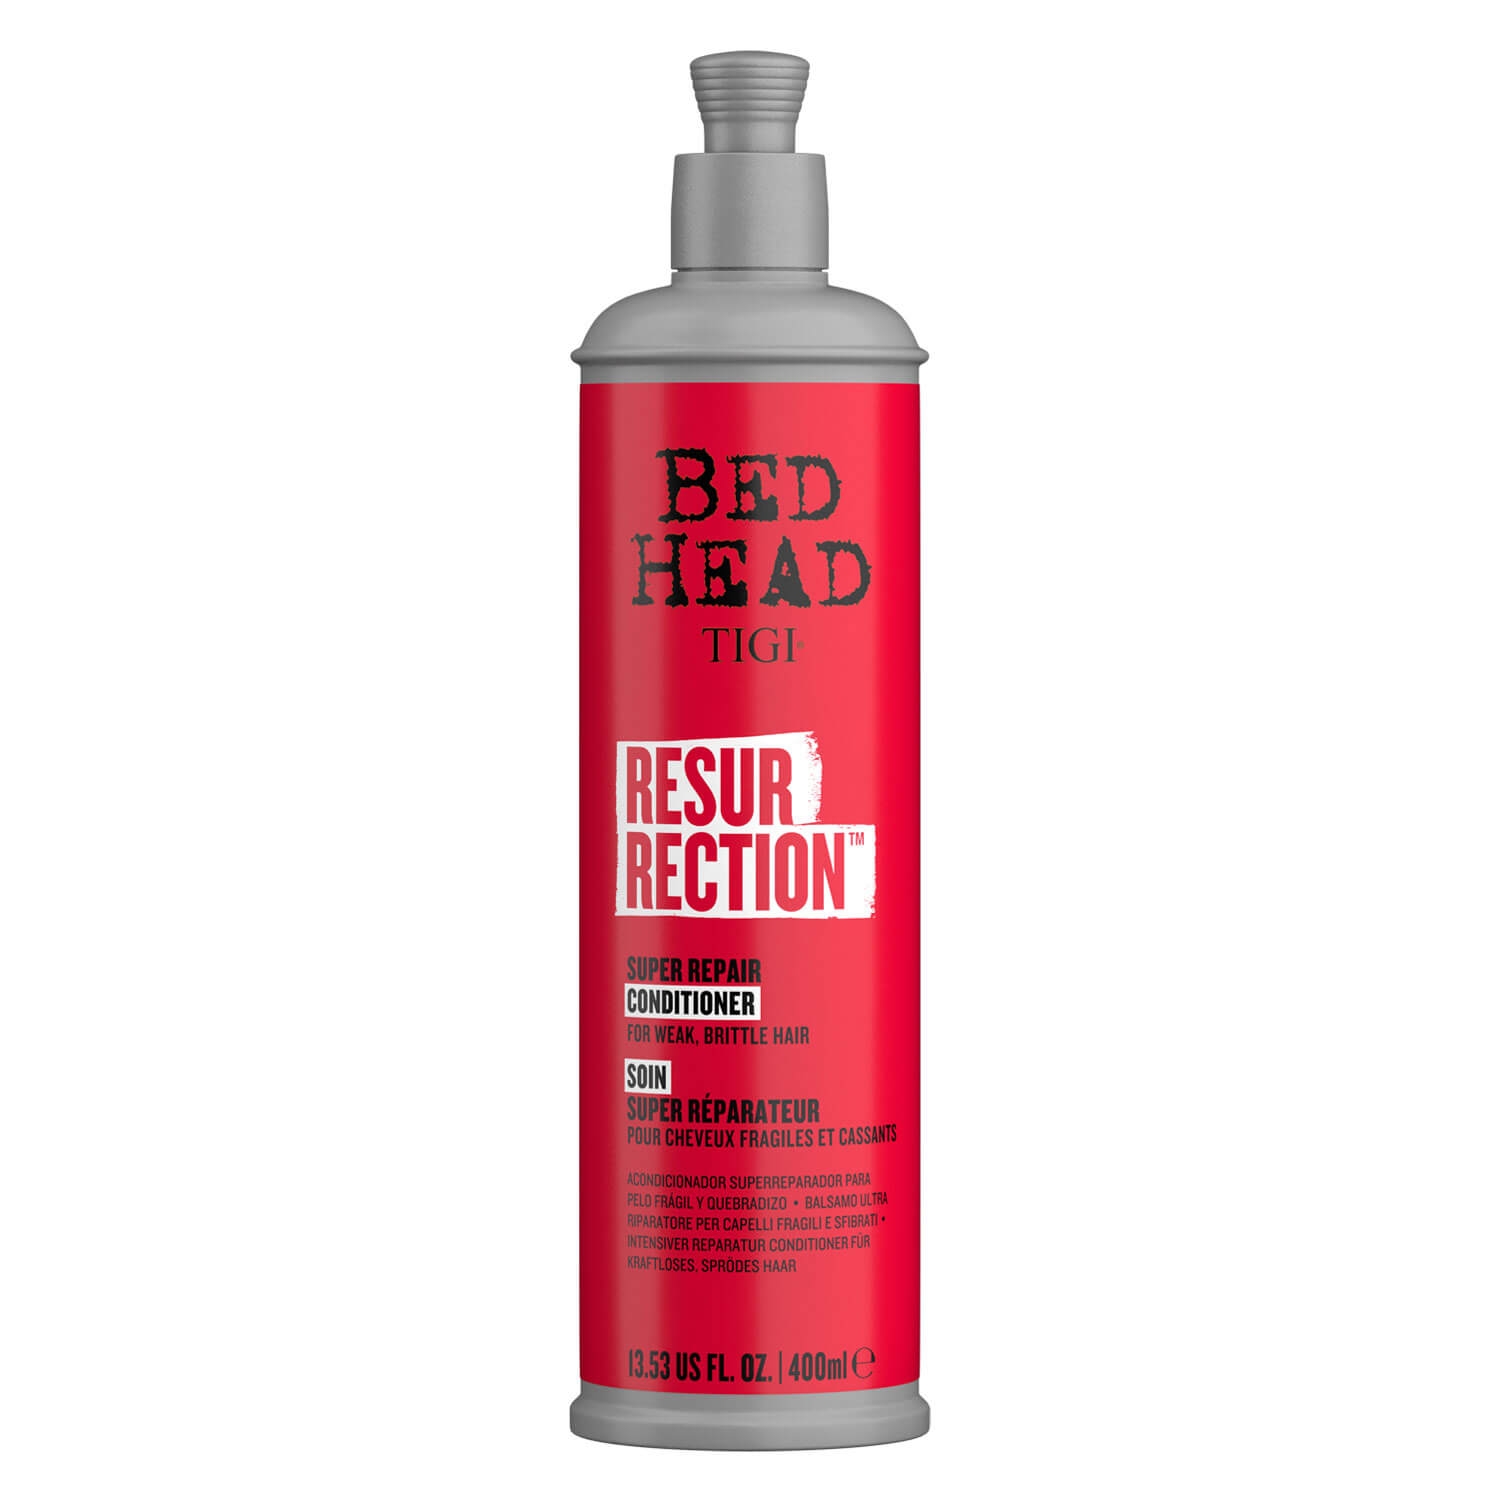 Produktbild von Bed Head Urban Antidotes - Resurrection Conditioner